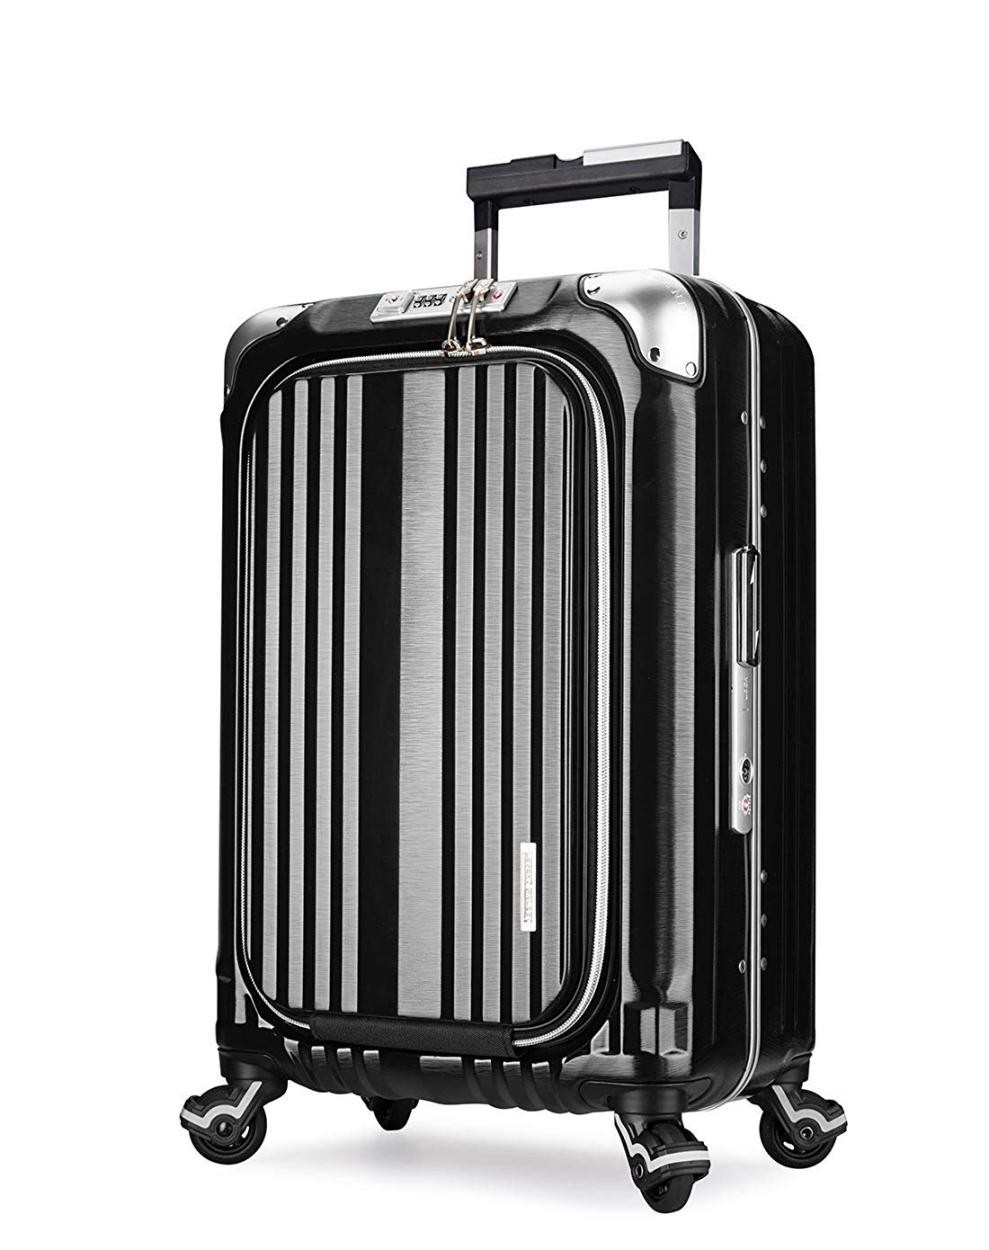 アウトレット スーツケース 中型 軽量 Mサイズ ビジネスキャリー ビジネスバッグ キャリーバッグ キャリーケース PC収納 メンズ B-6603-58